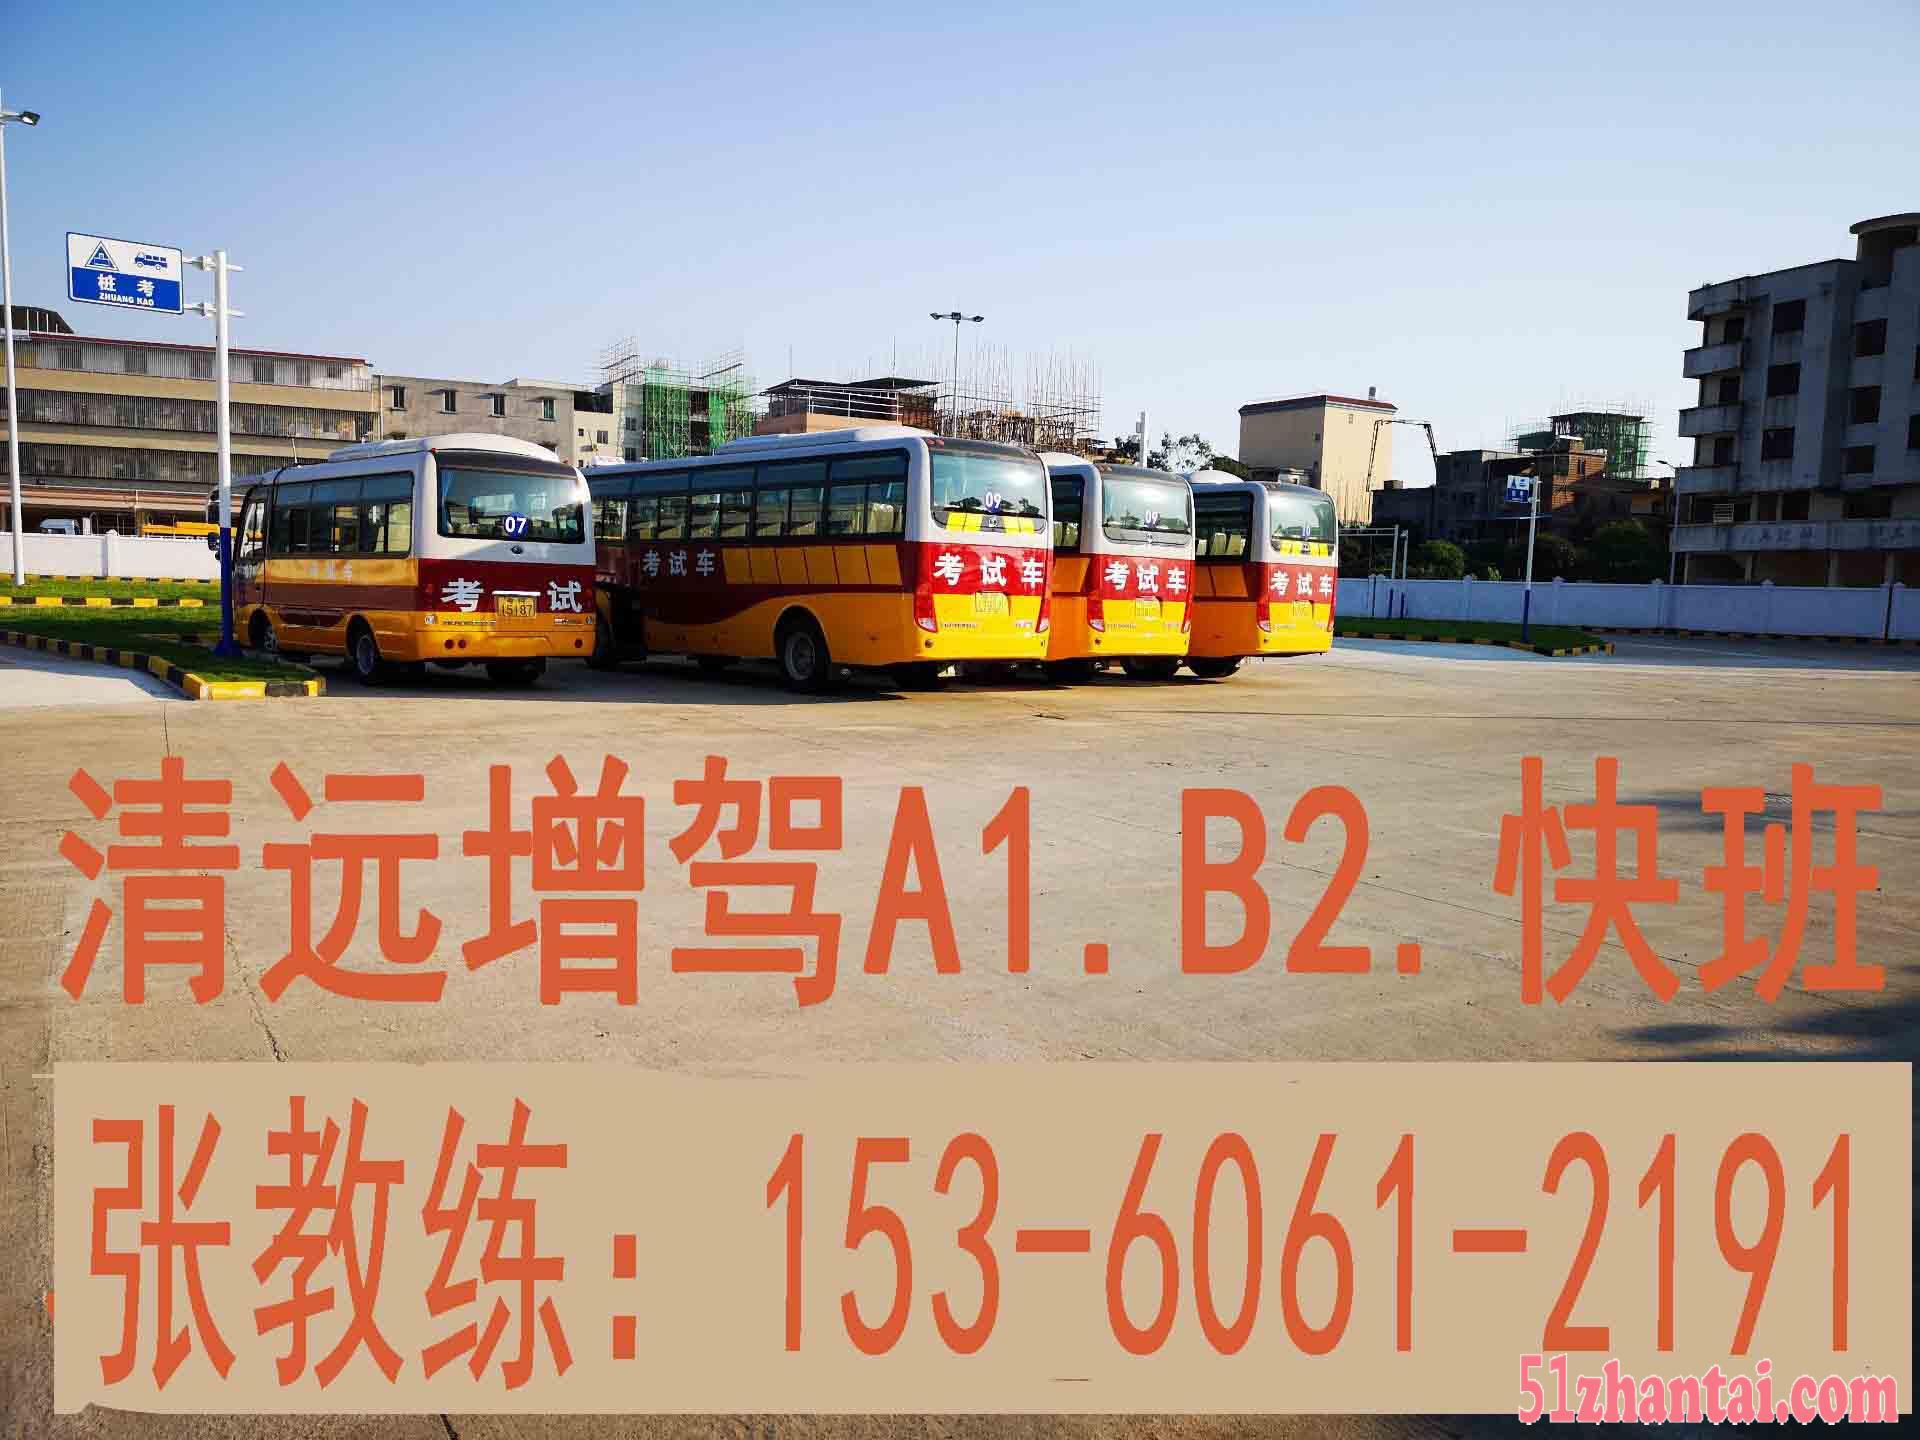 广州c1几年可增b2 c1多久可增a2 c1多长时间能增b2-图1